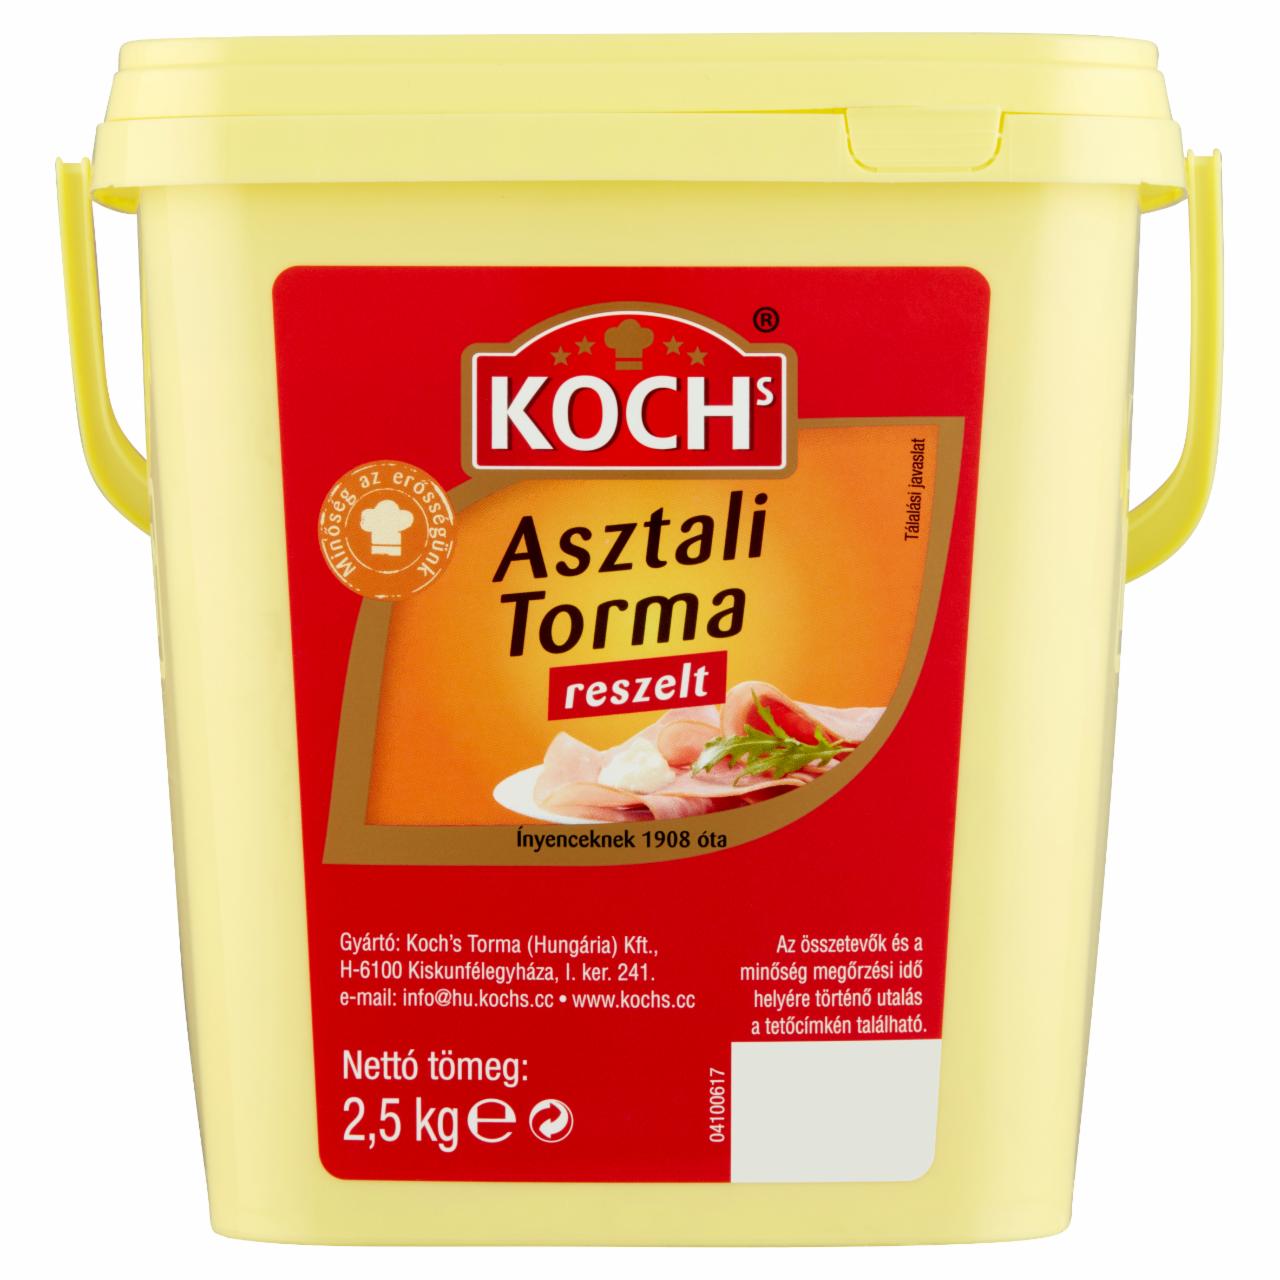 Képek - Koch's reszelt asztali torma 2,5 kg